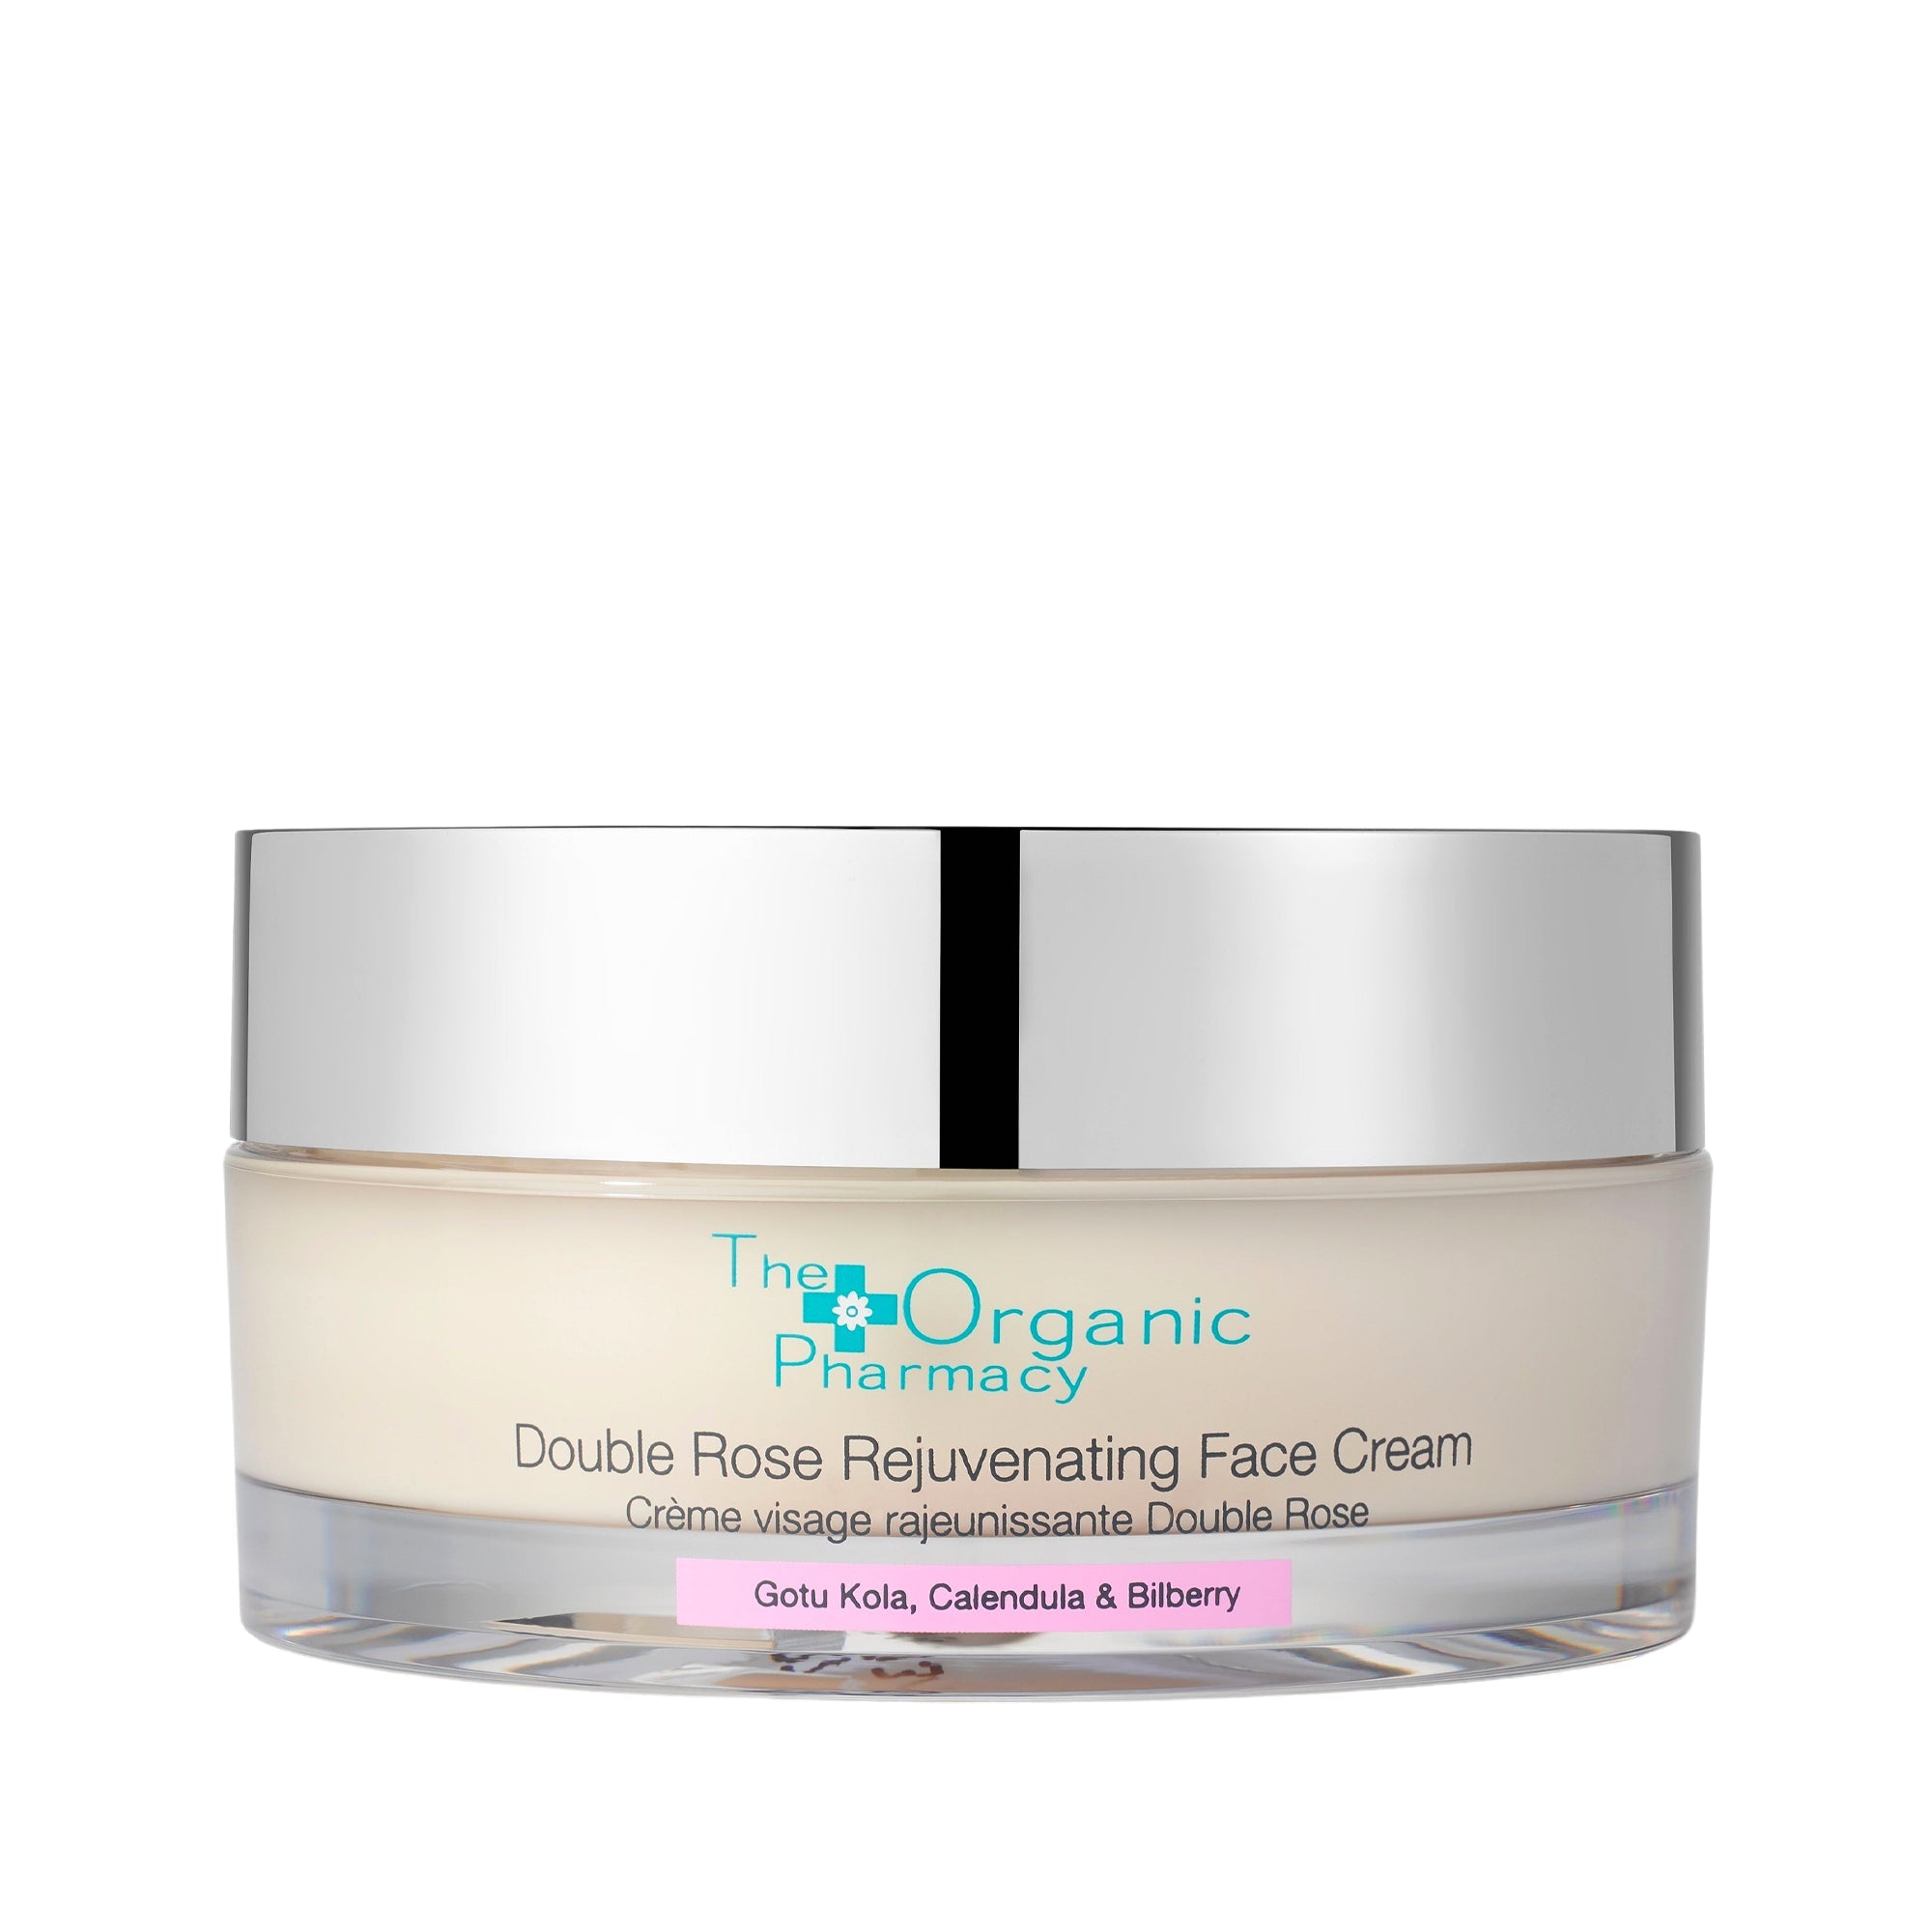 Crème visage rajeunissante Double Rose – Rejuvenating Face Cream Crème visage rajeunissante Double Rose – Rejuvenating Face Cream - The Organic Pharmacy